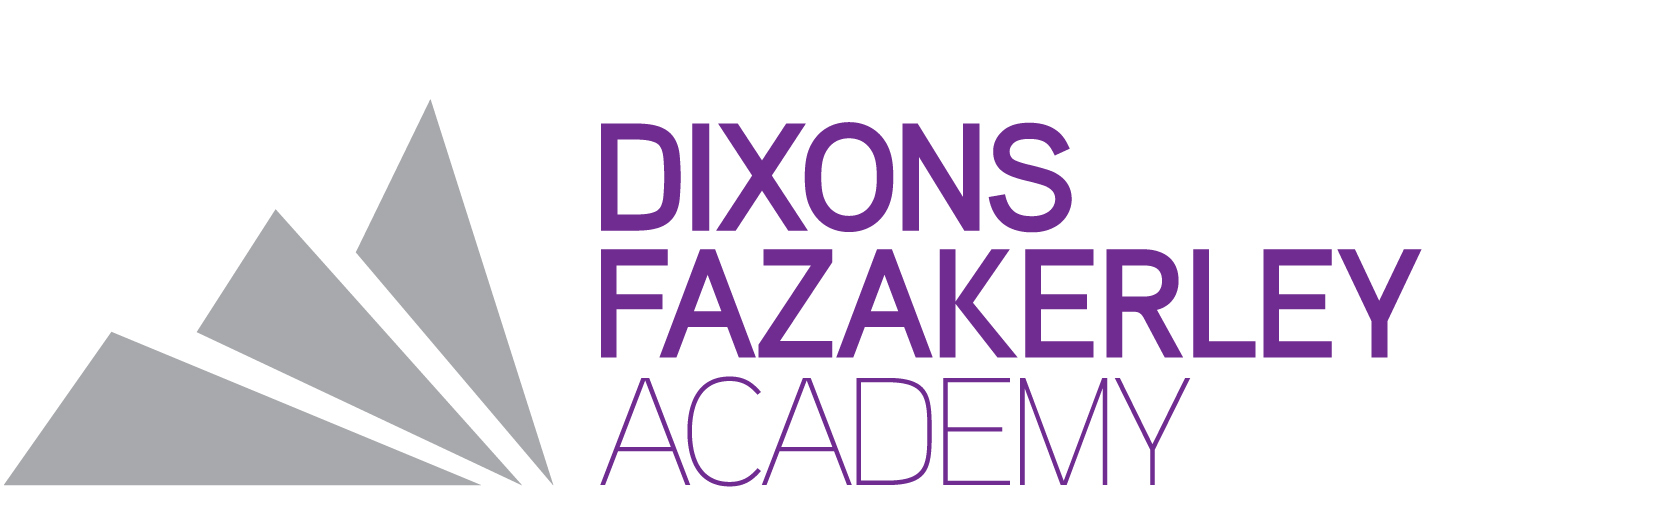 Dixons Fazakerley Academy